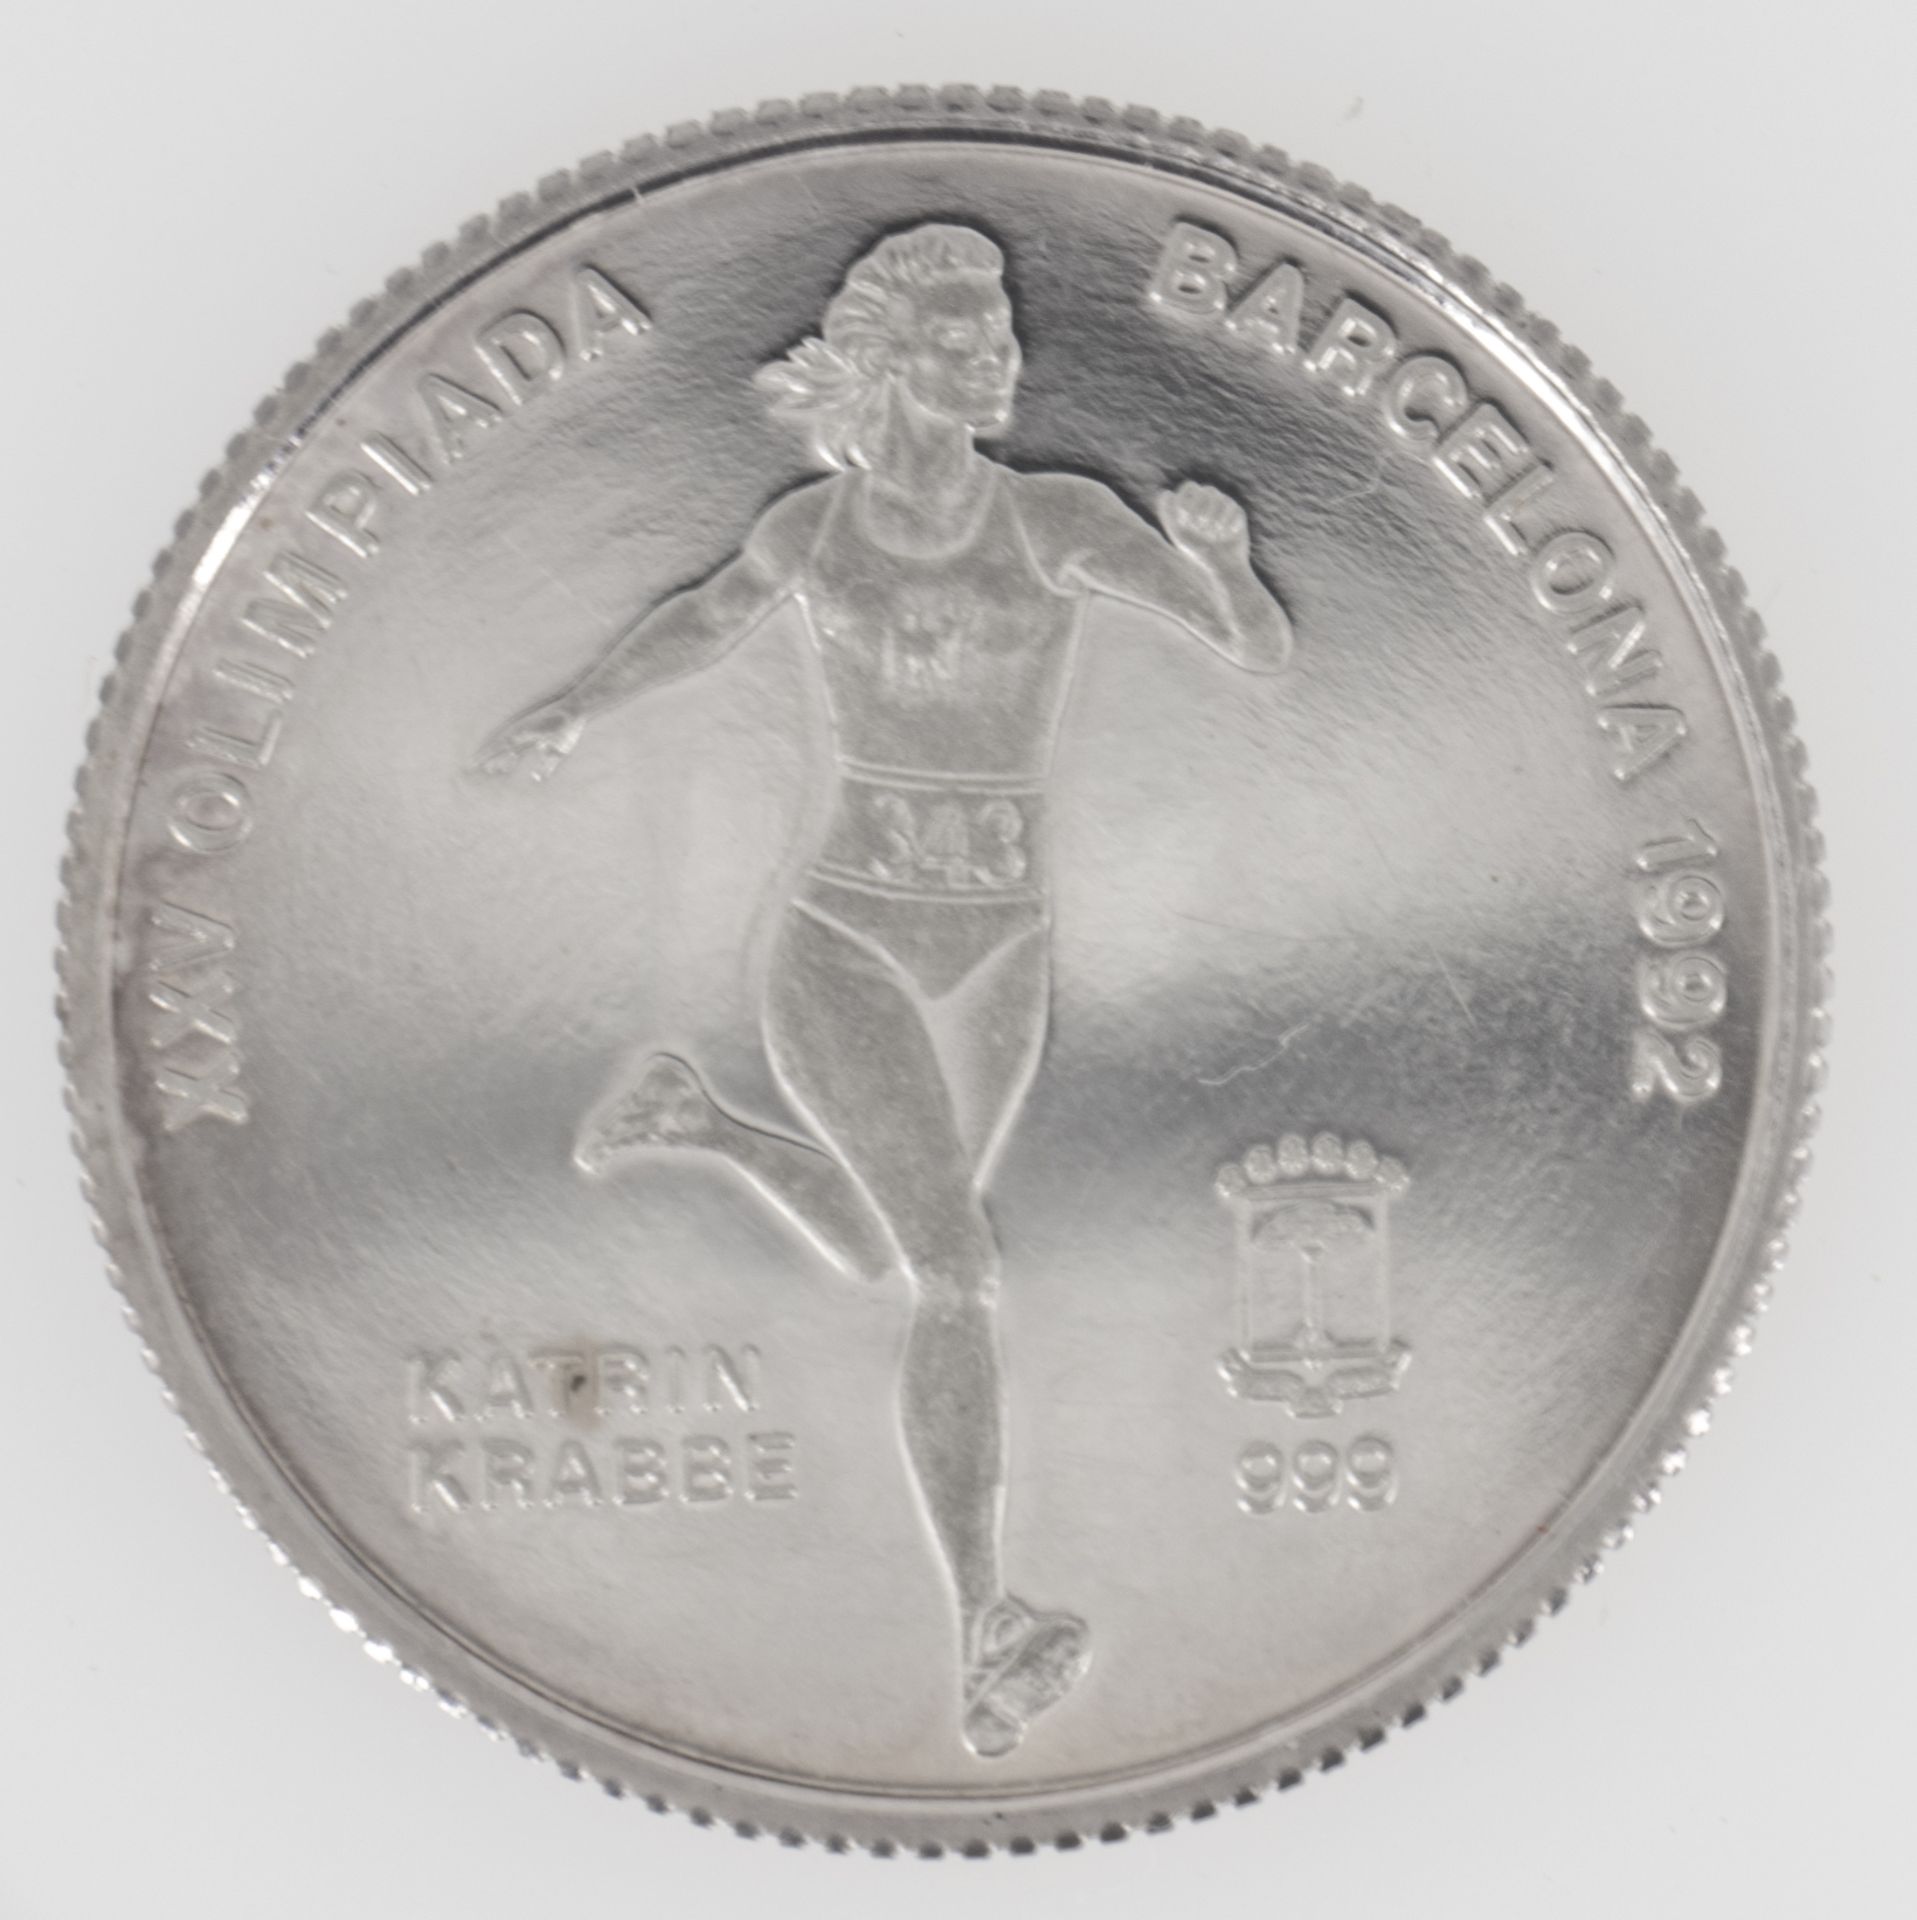 Äquatorialguinea 1992, 7000 Francos - Silbermünze "Katrin Krabbe". PP